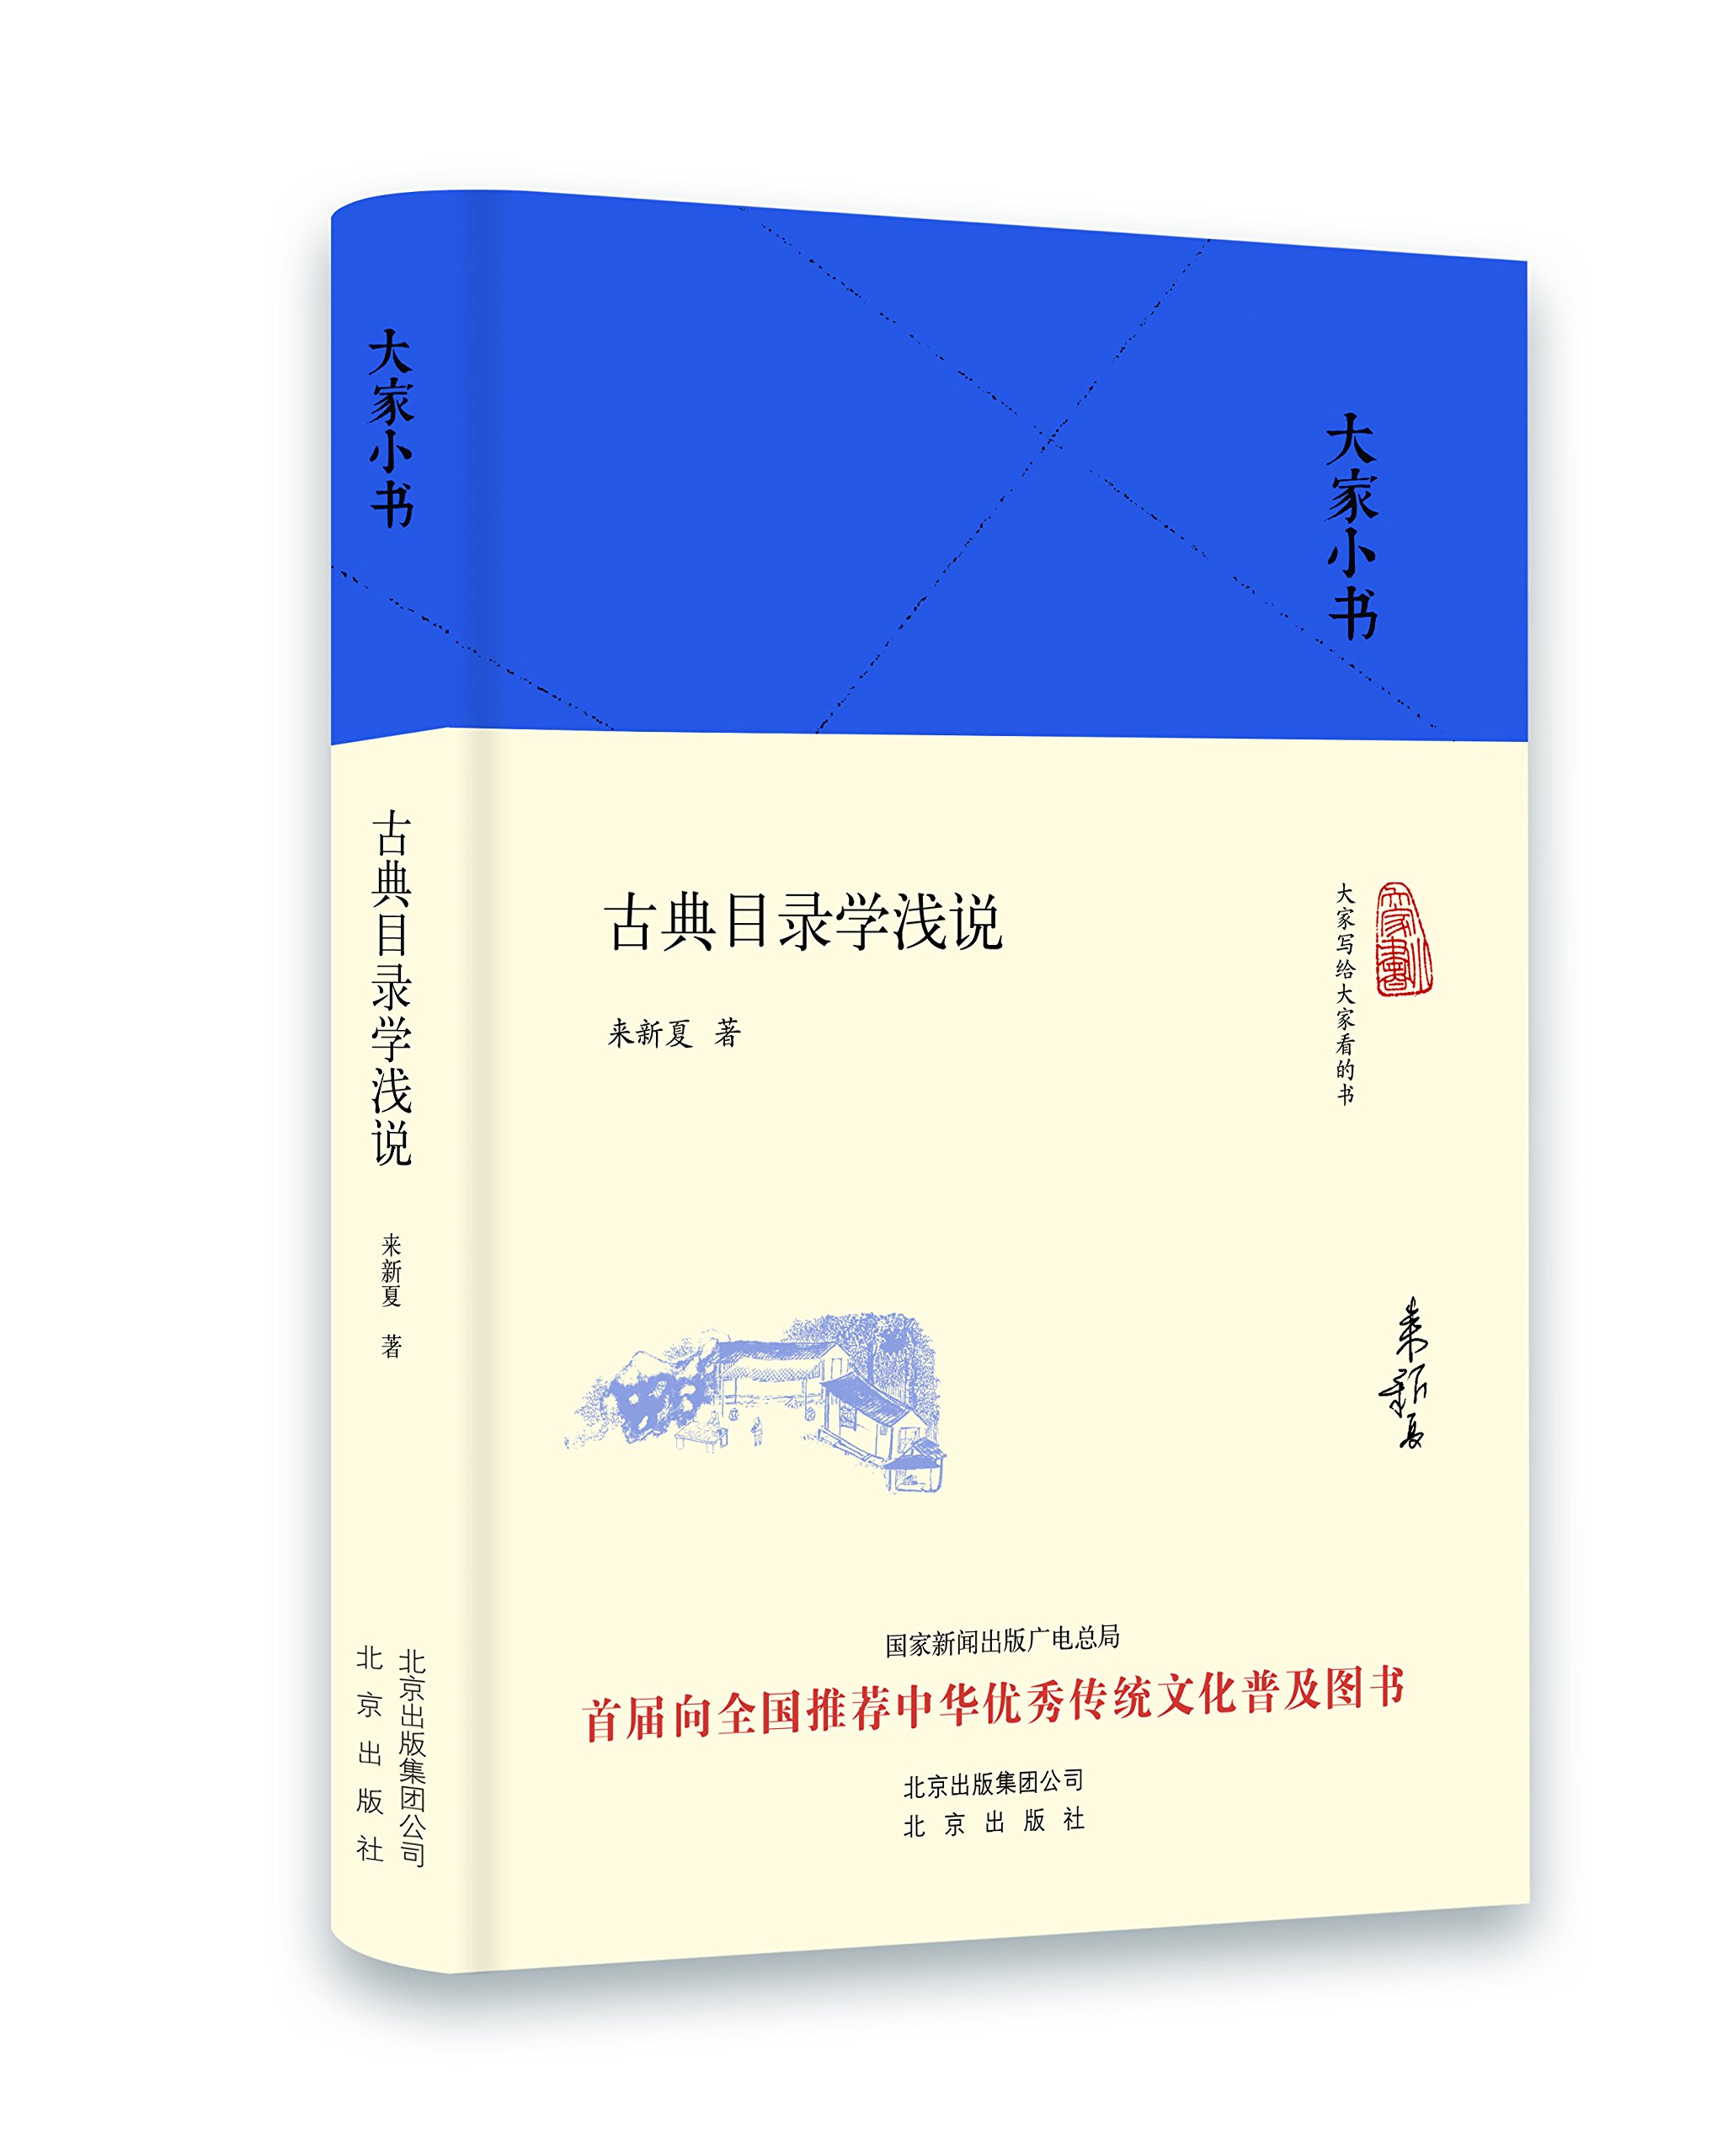 大家小书:古典目录学浅说 精装 来新夏 著 针对初学者的入门讲义 北京出版社